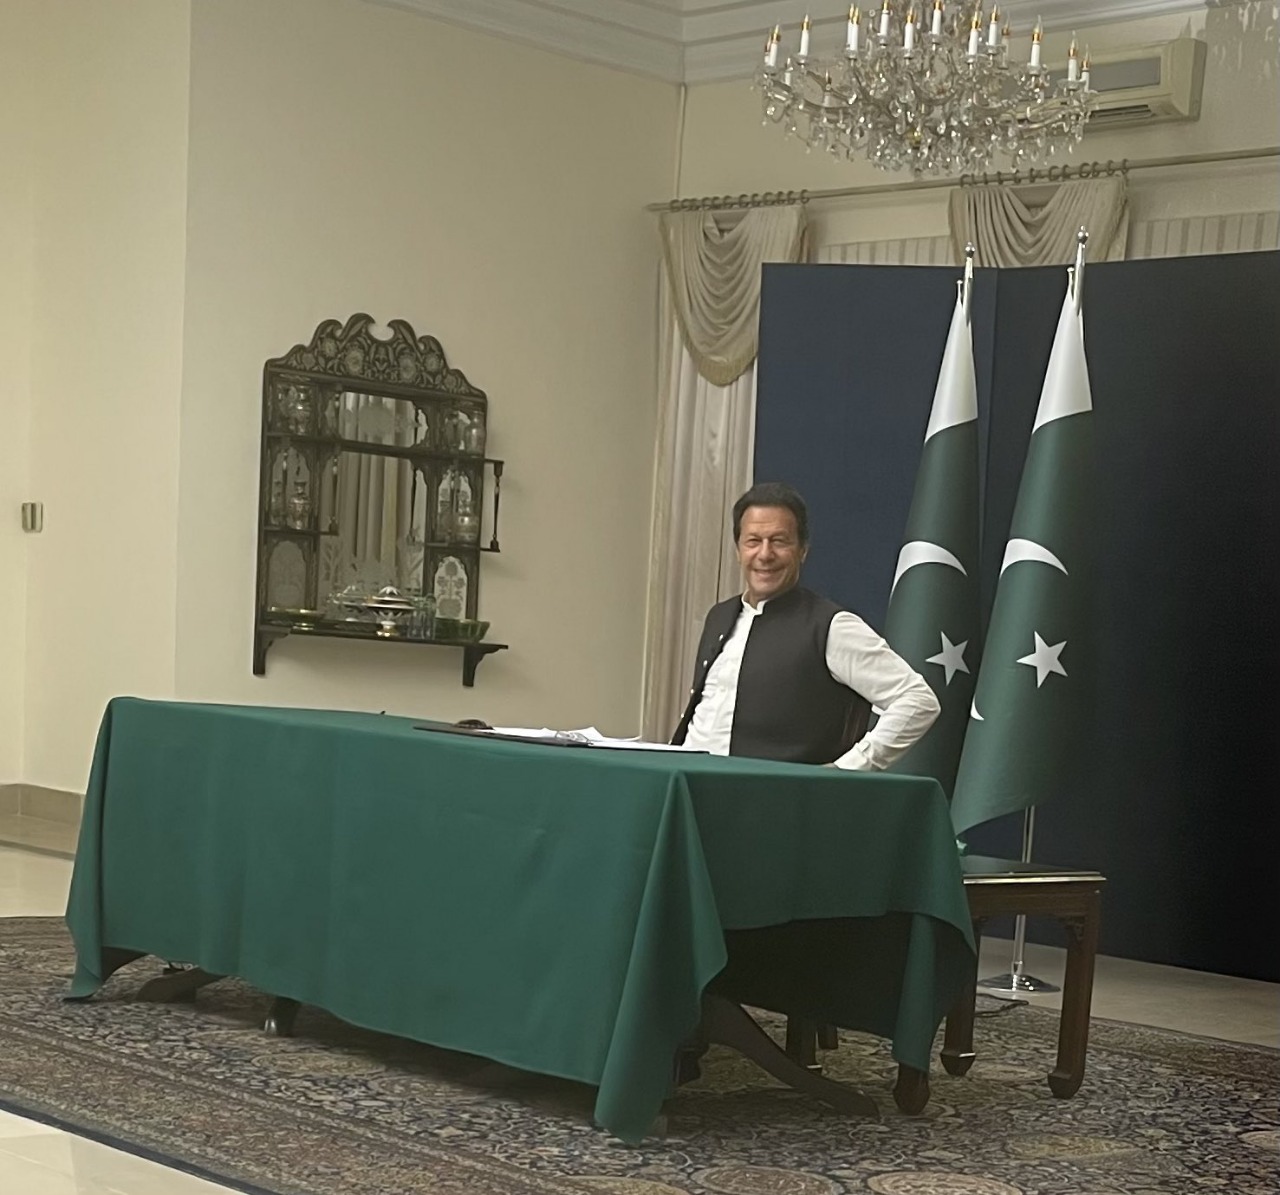 پاکستان میں سیاسی محاذ آرائی نُقطہ عروج پر پہنچ چکی ہے، عمران خان وزیراعظم کی کرسی پر مزید براجمان رہیں گے یا نہیں اس بات کا فیصلہ اتوار 3 اپریل کو ہوجائے گا— فوٹو: فرخ حبیب ٹوئٹر